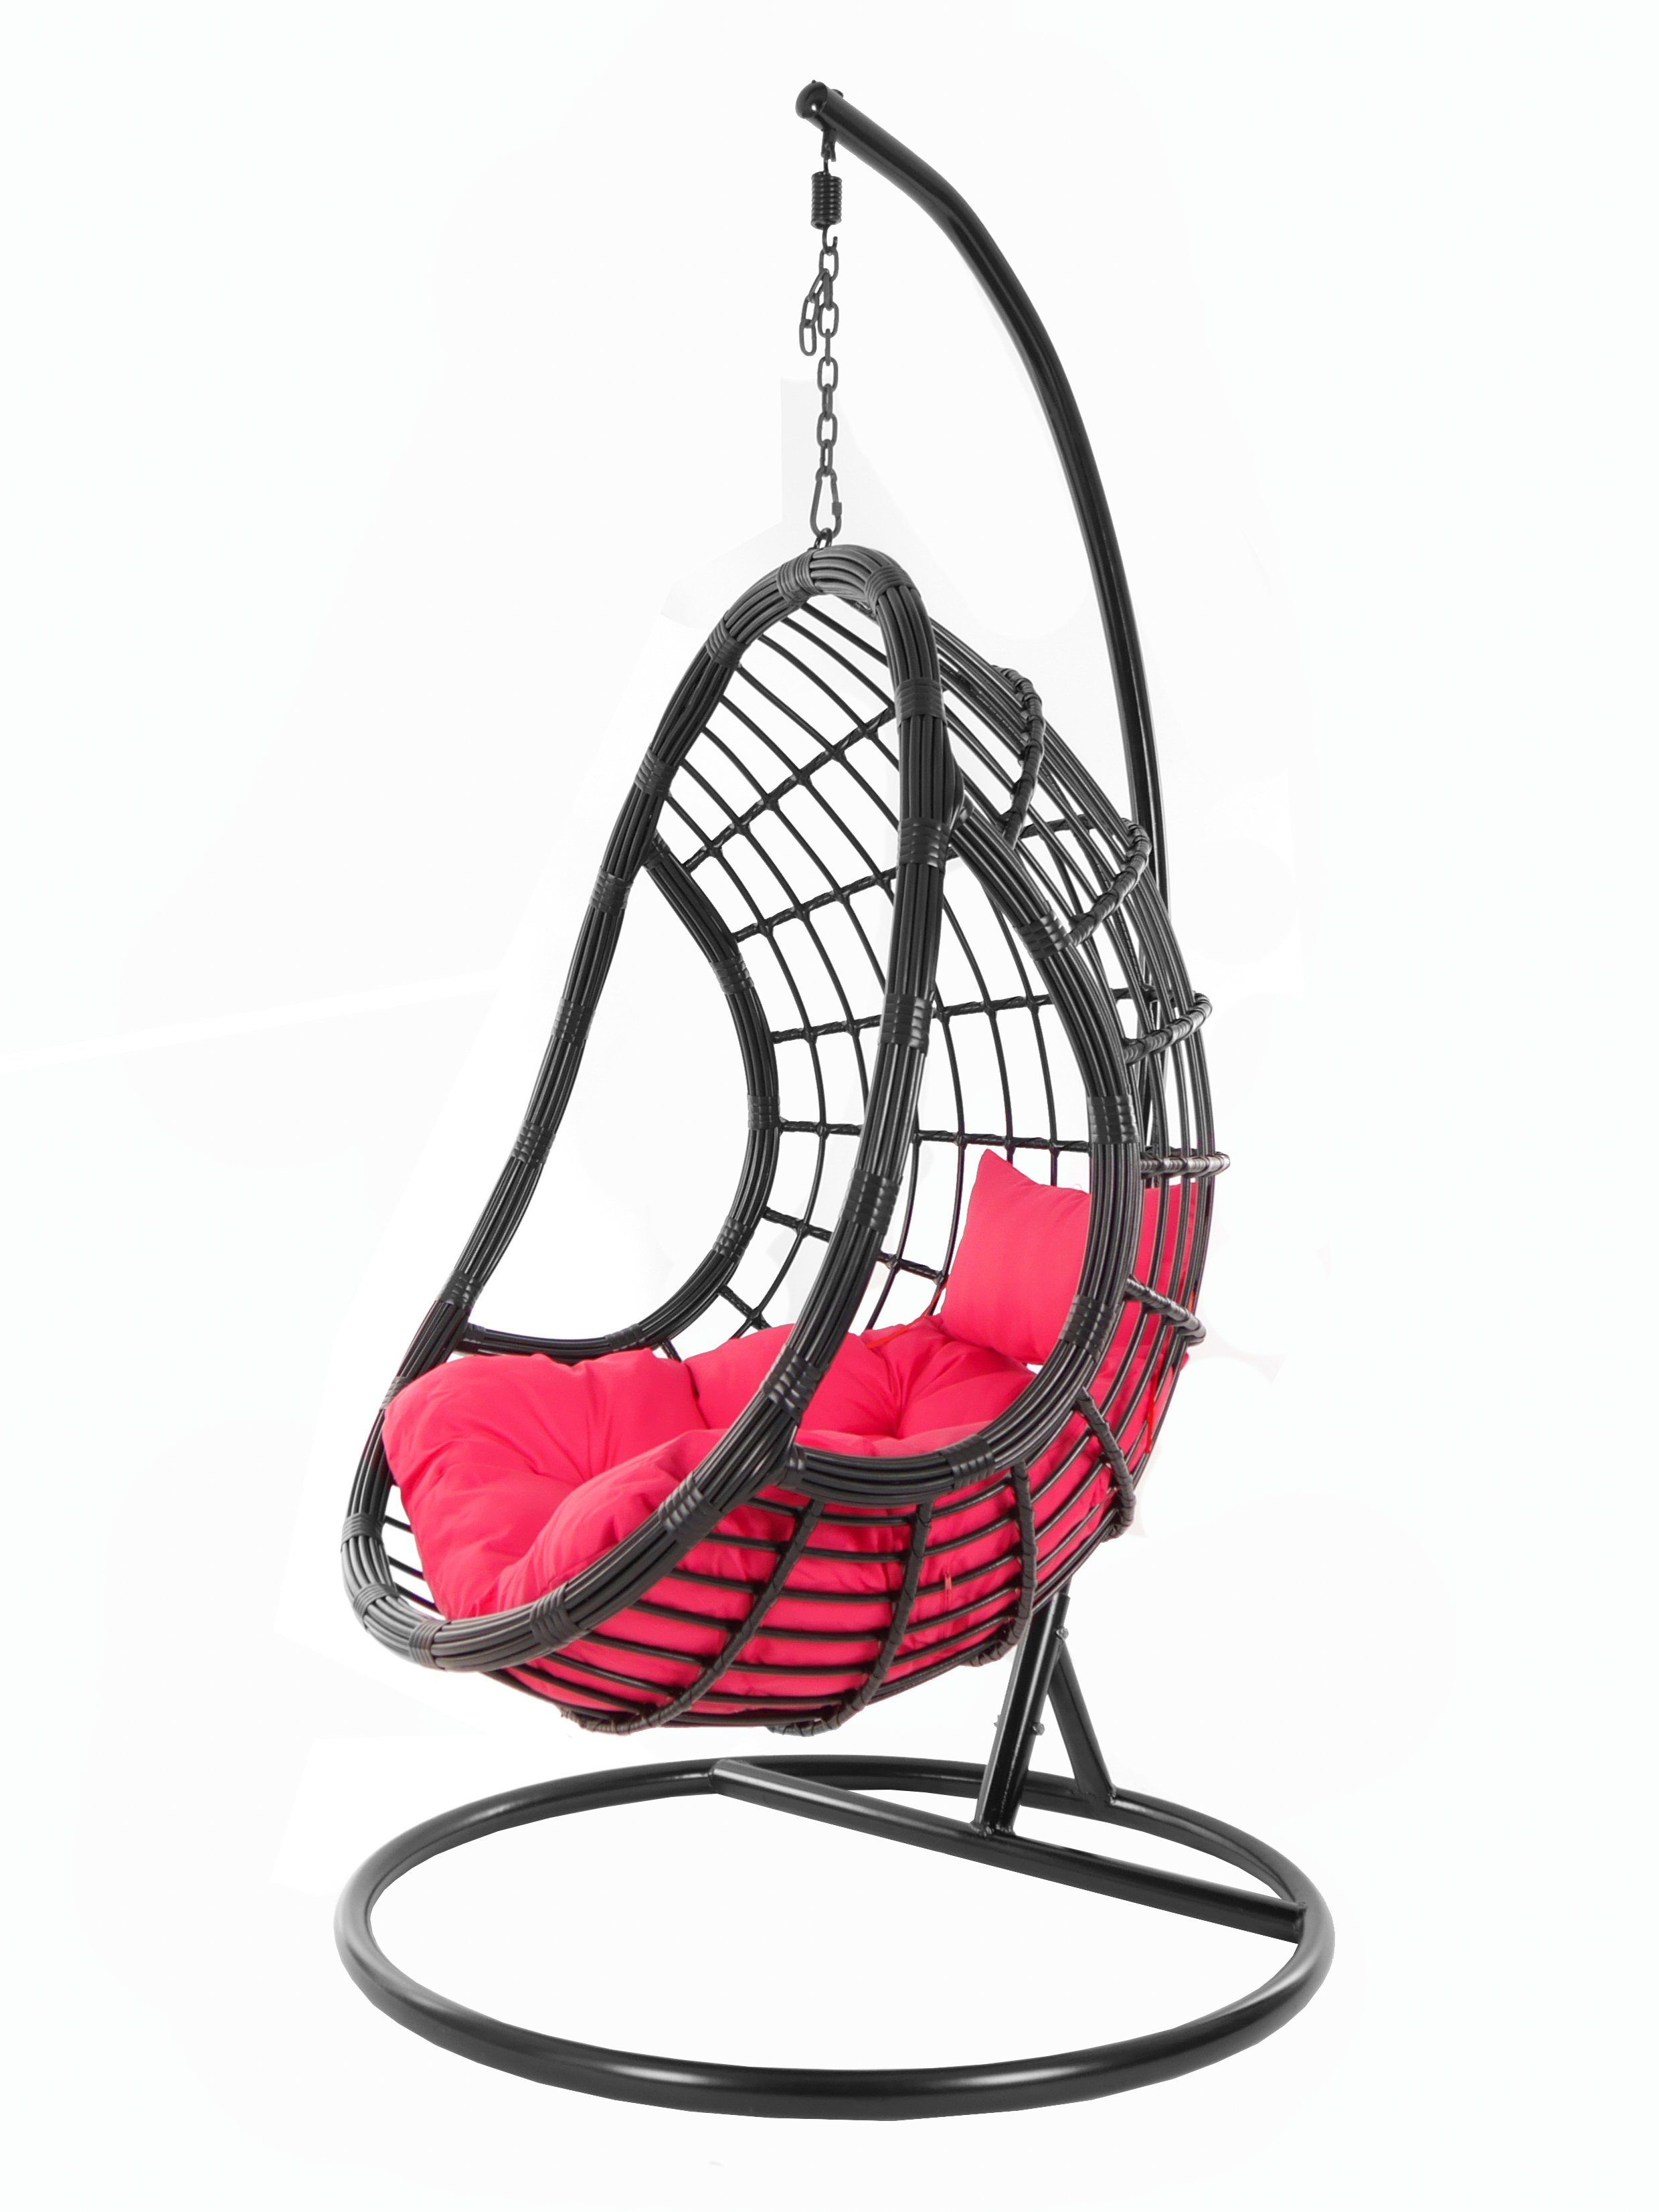 KIDEO Hängesessel PALMANOVA black, Swing mit schwarz, edles Design hot pink Gestell pink) Schwebesessel, Kissen, (3333 und Hängesessel Loungemöbel, Chair